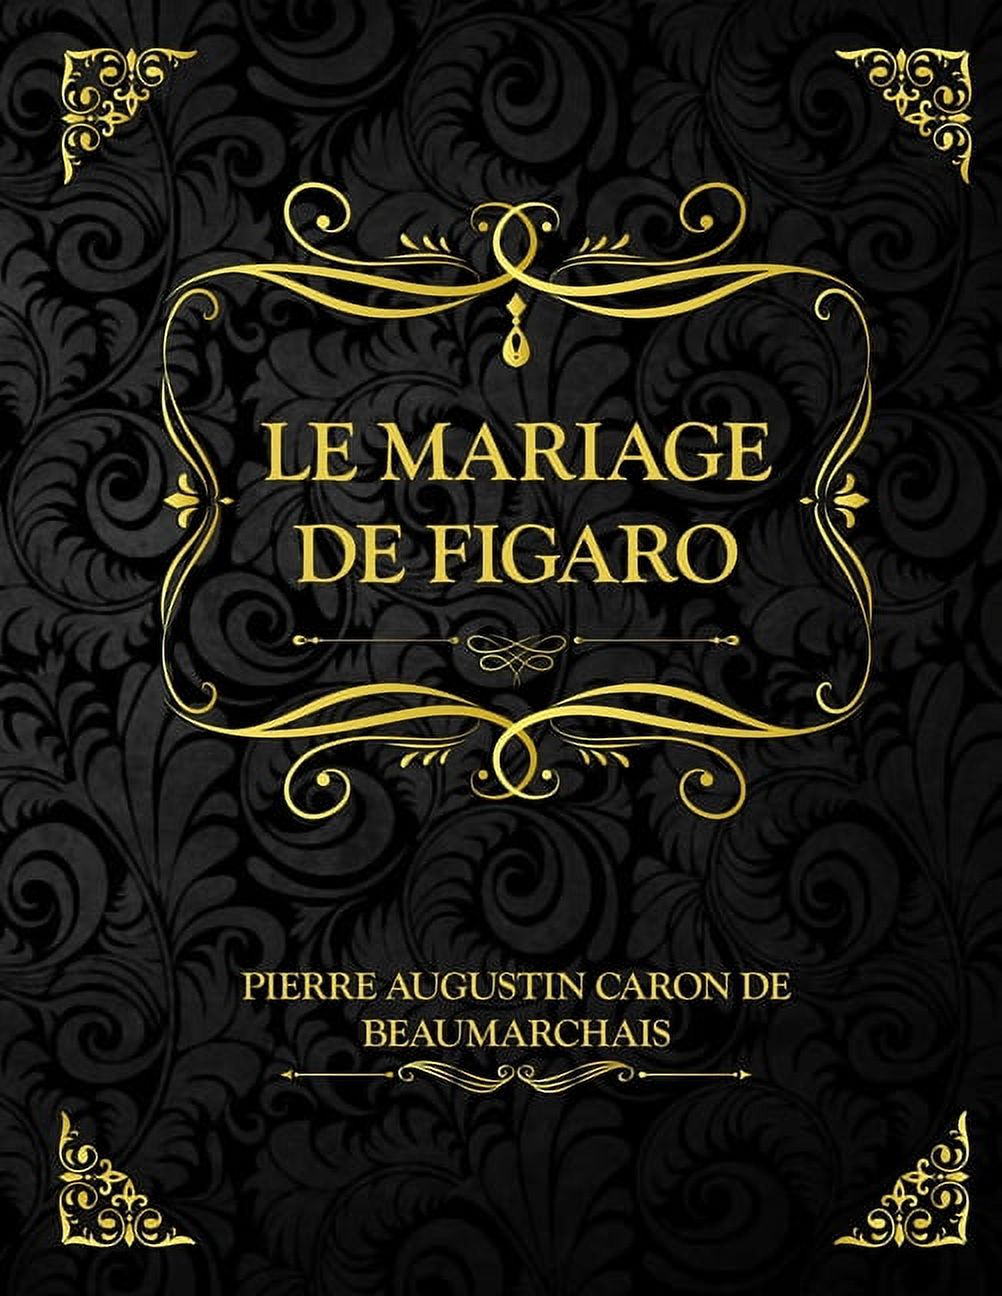 Le mariage de Figaro : Pierre-Augustin Caron de Beaumarchais - livre littérature française classique pour bac lycée (Paperback) - image 1 of 1